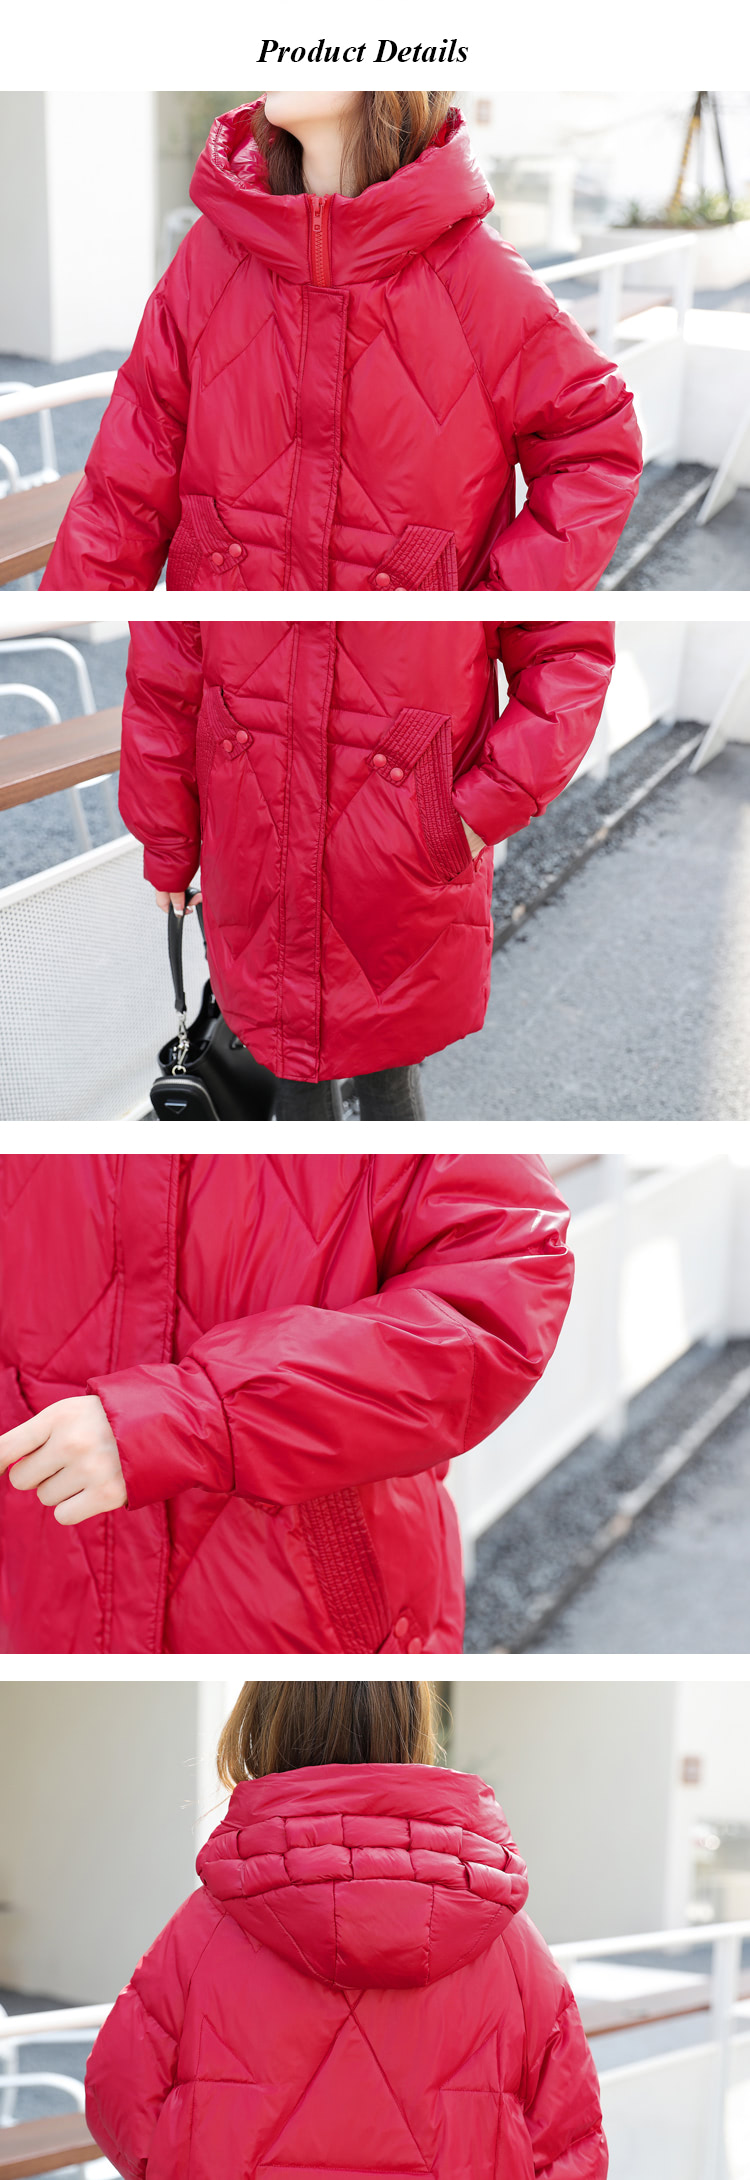 Female-Hooded-Mid-Length-Down-Jacket-Warm-Puffer-Parka-Outwear22.jpg